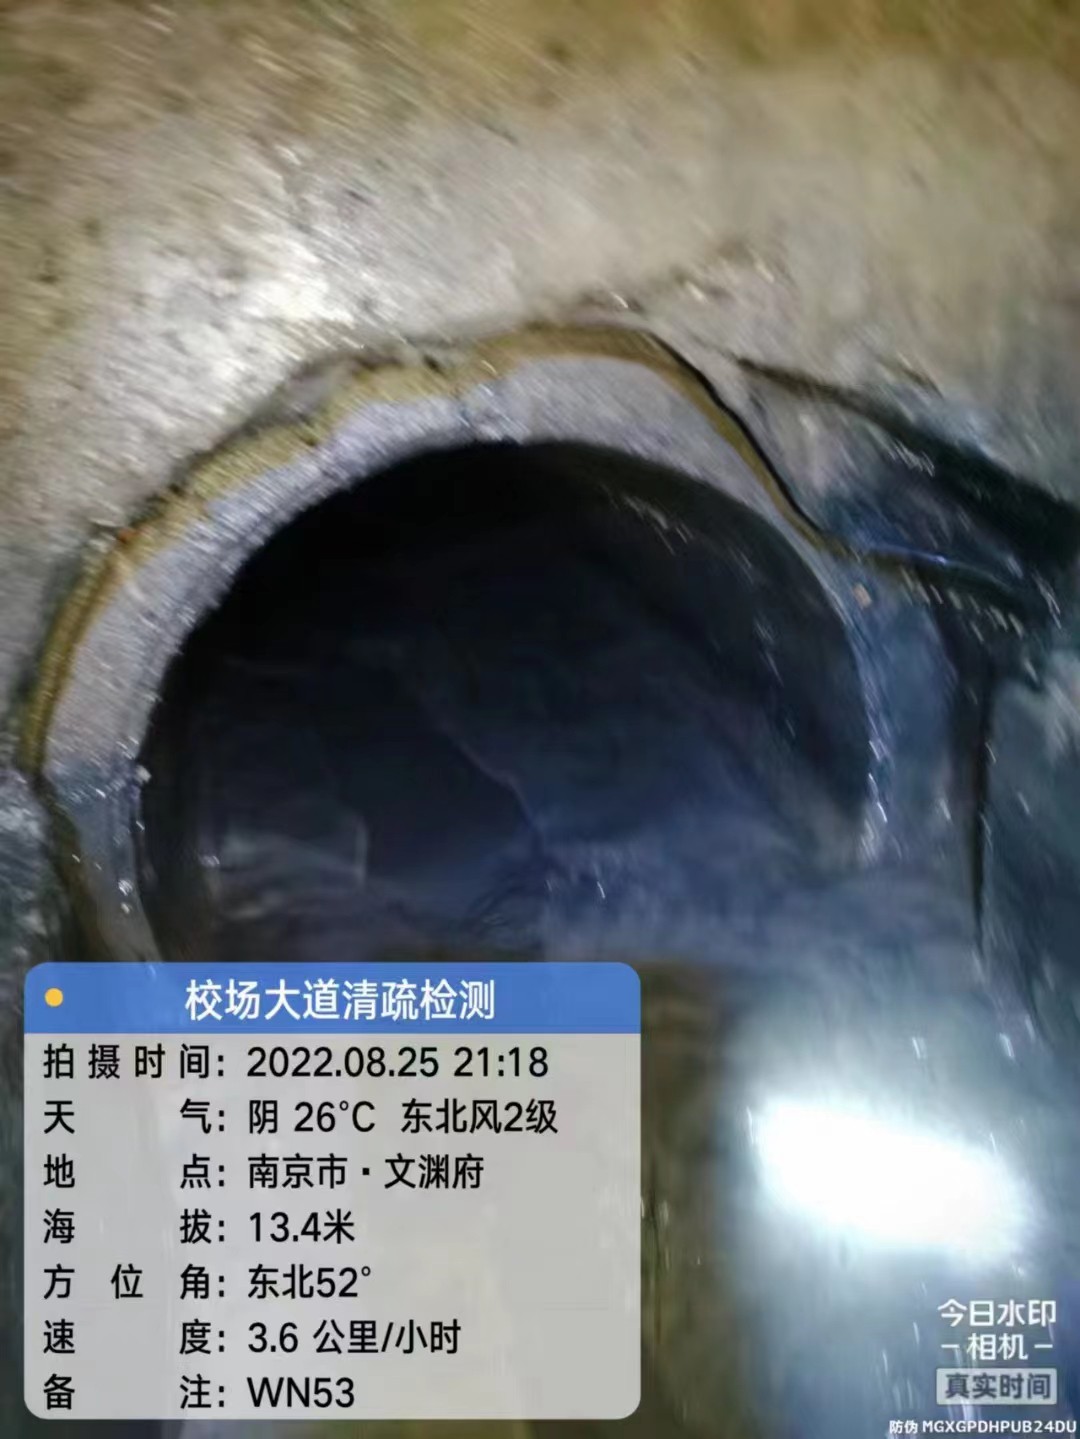 安徽省黄山市雨污混接管道检测改造公司